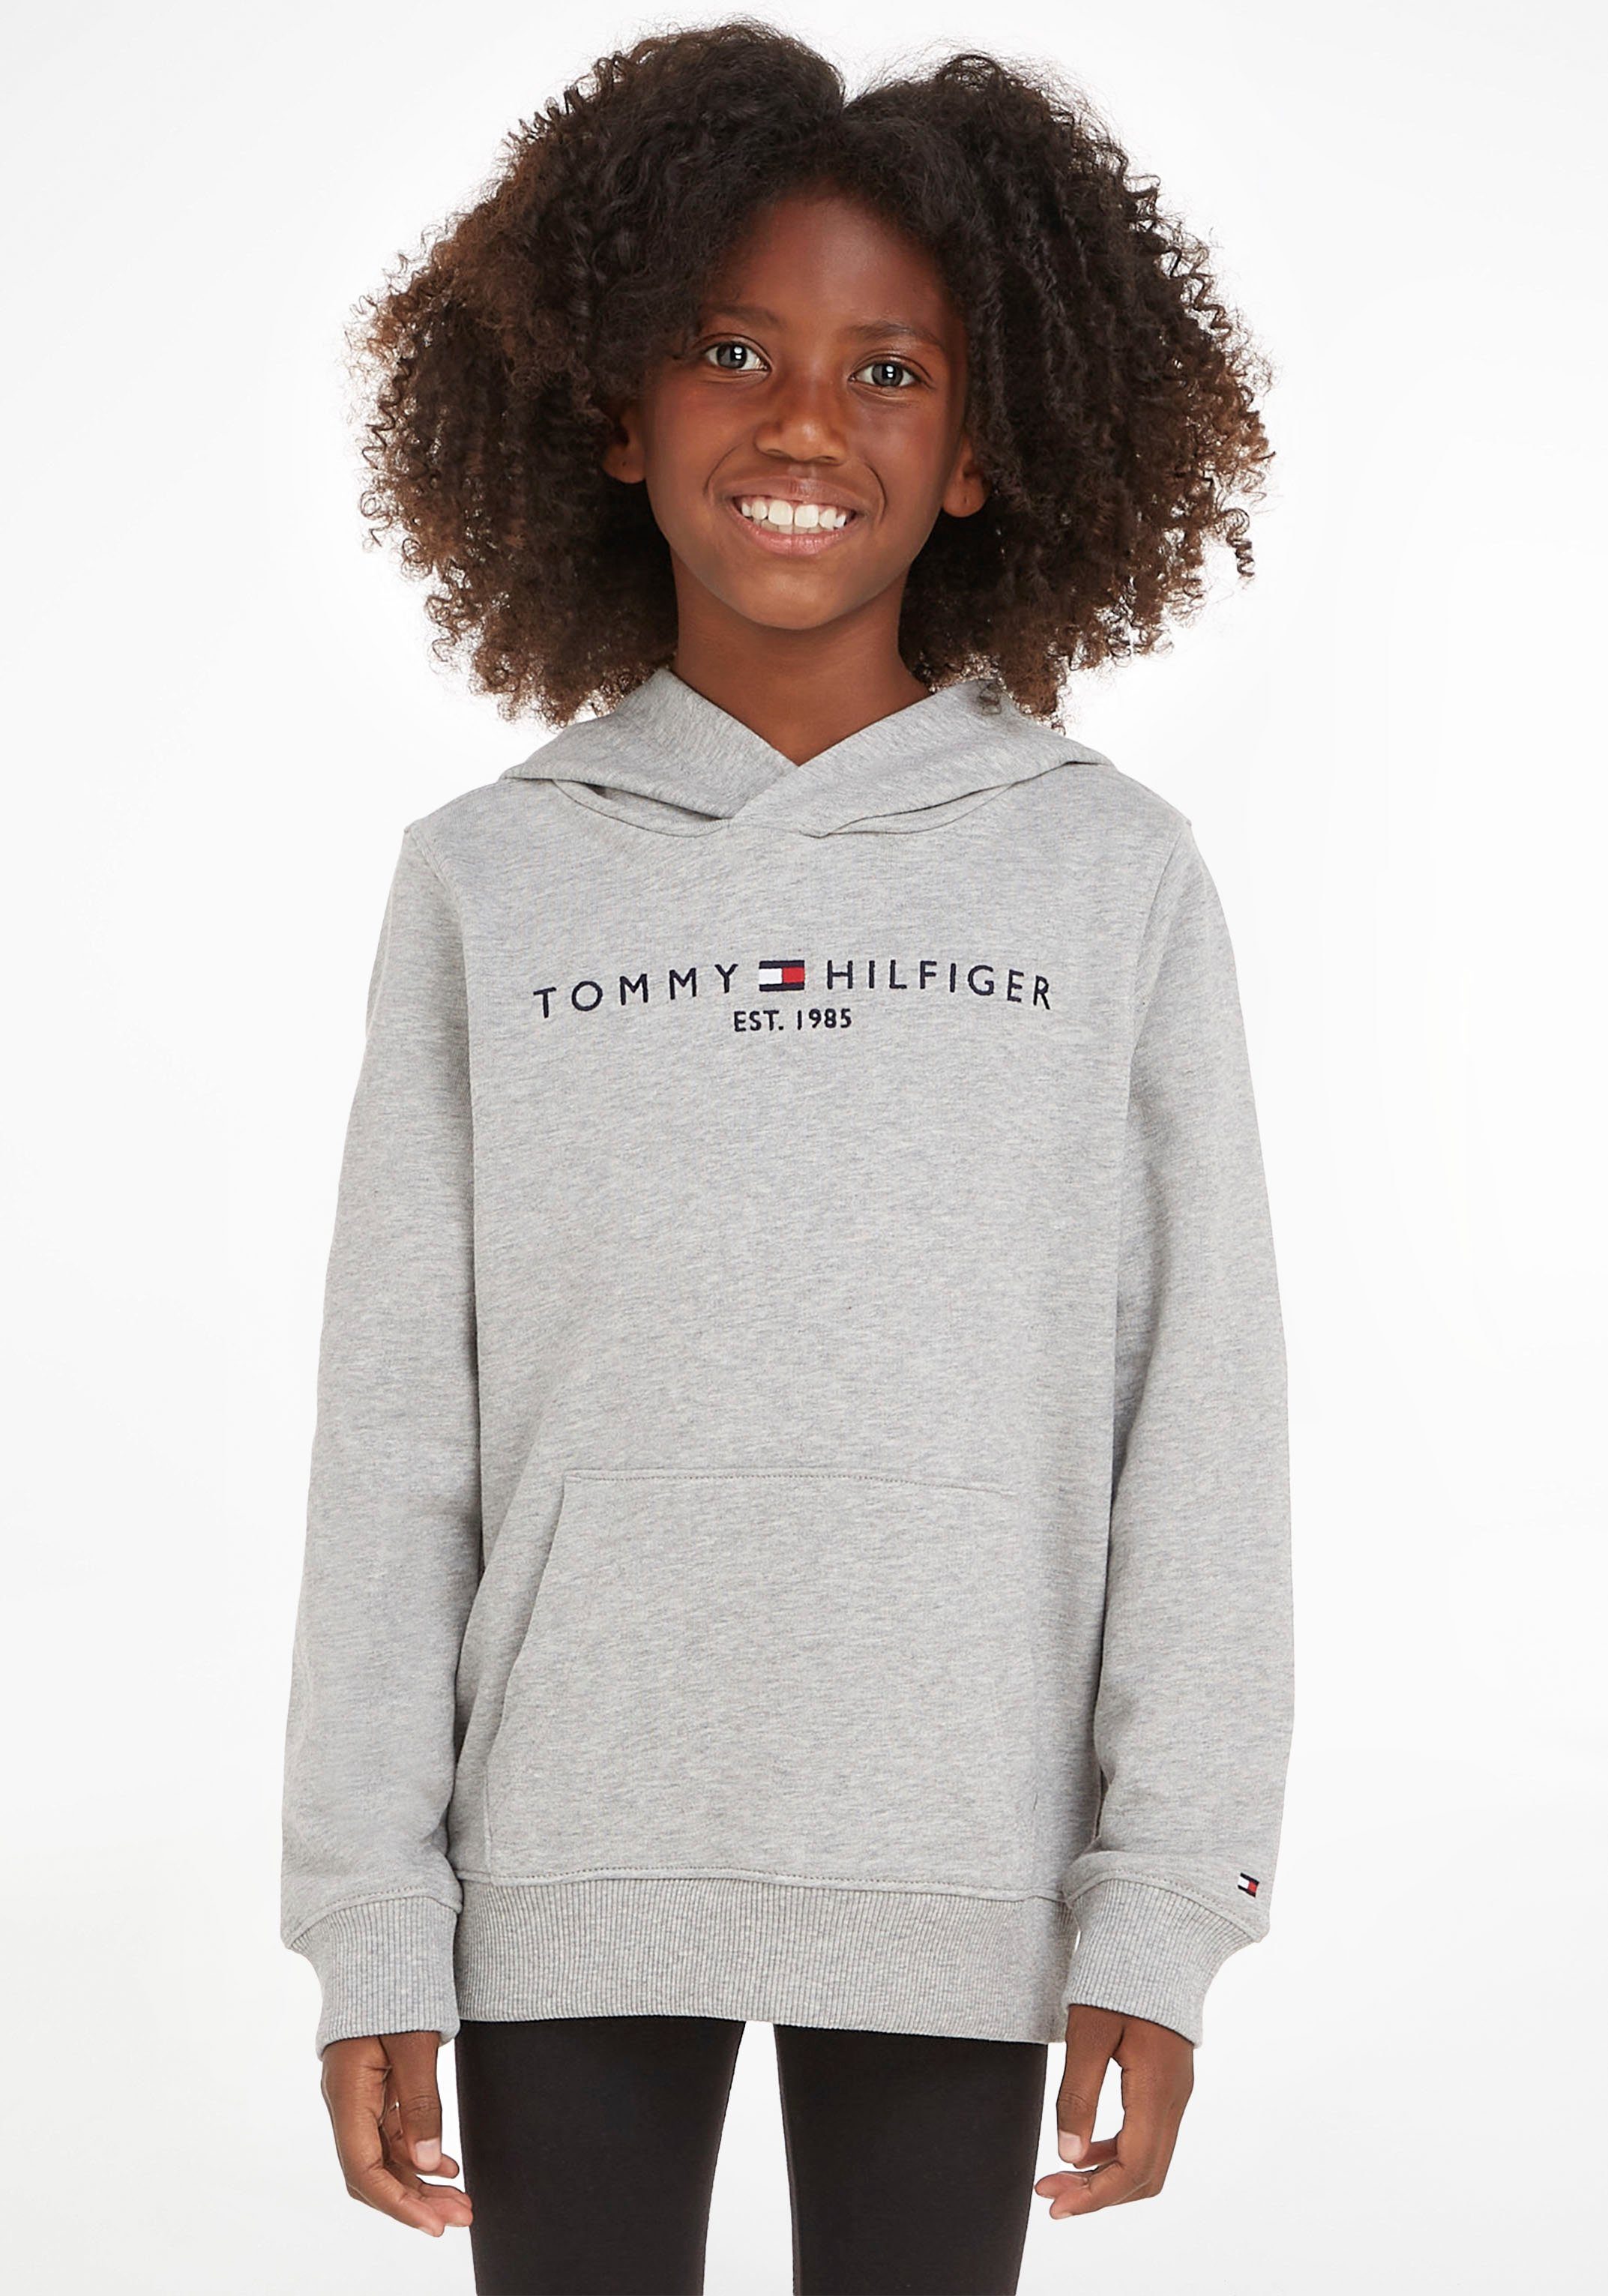 Tommy Hilfiger Kapuzensweatshirt ESSENTIAL HOODIE Kinder Kids Junior MiniMe,für  Jungen und Mädchen, Sweatshirt von TOMMY HILFIGER für Jungen und Mädchen